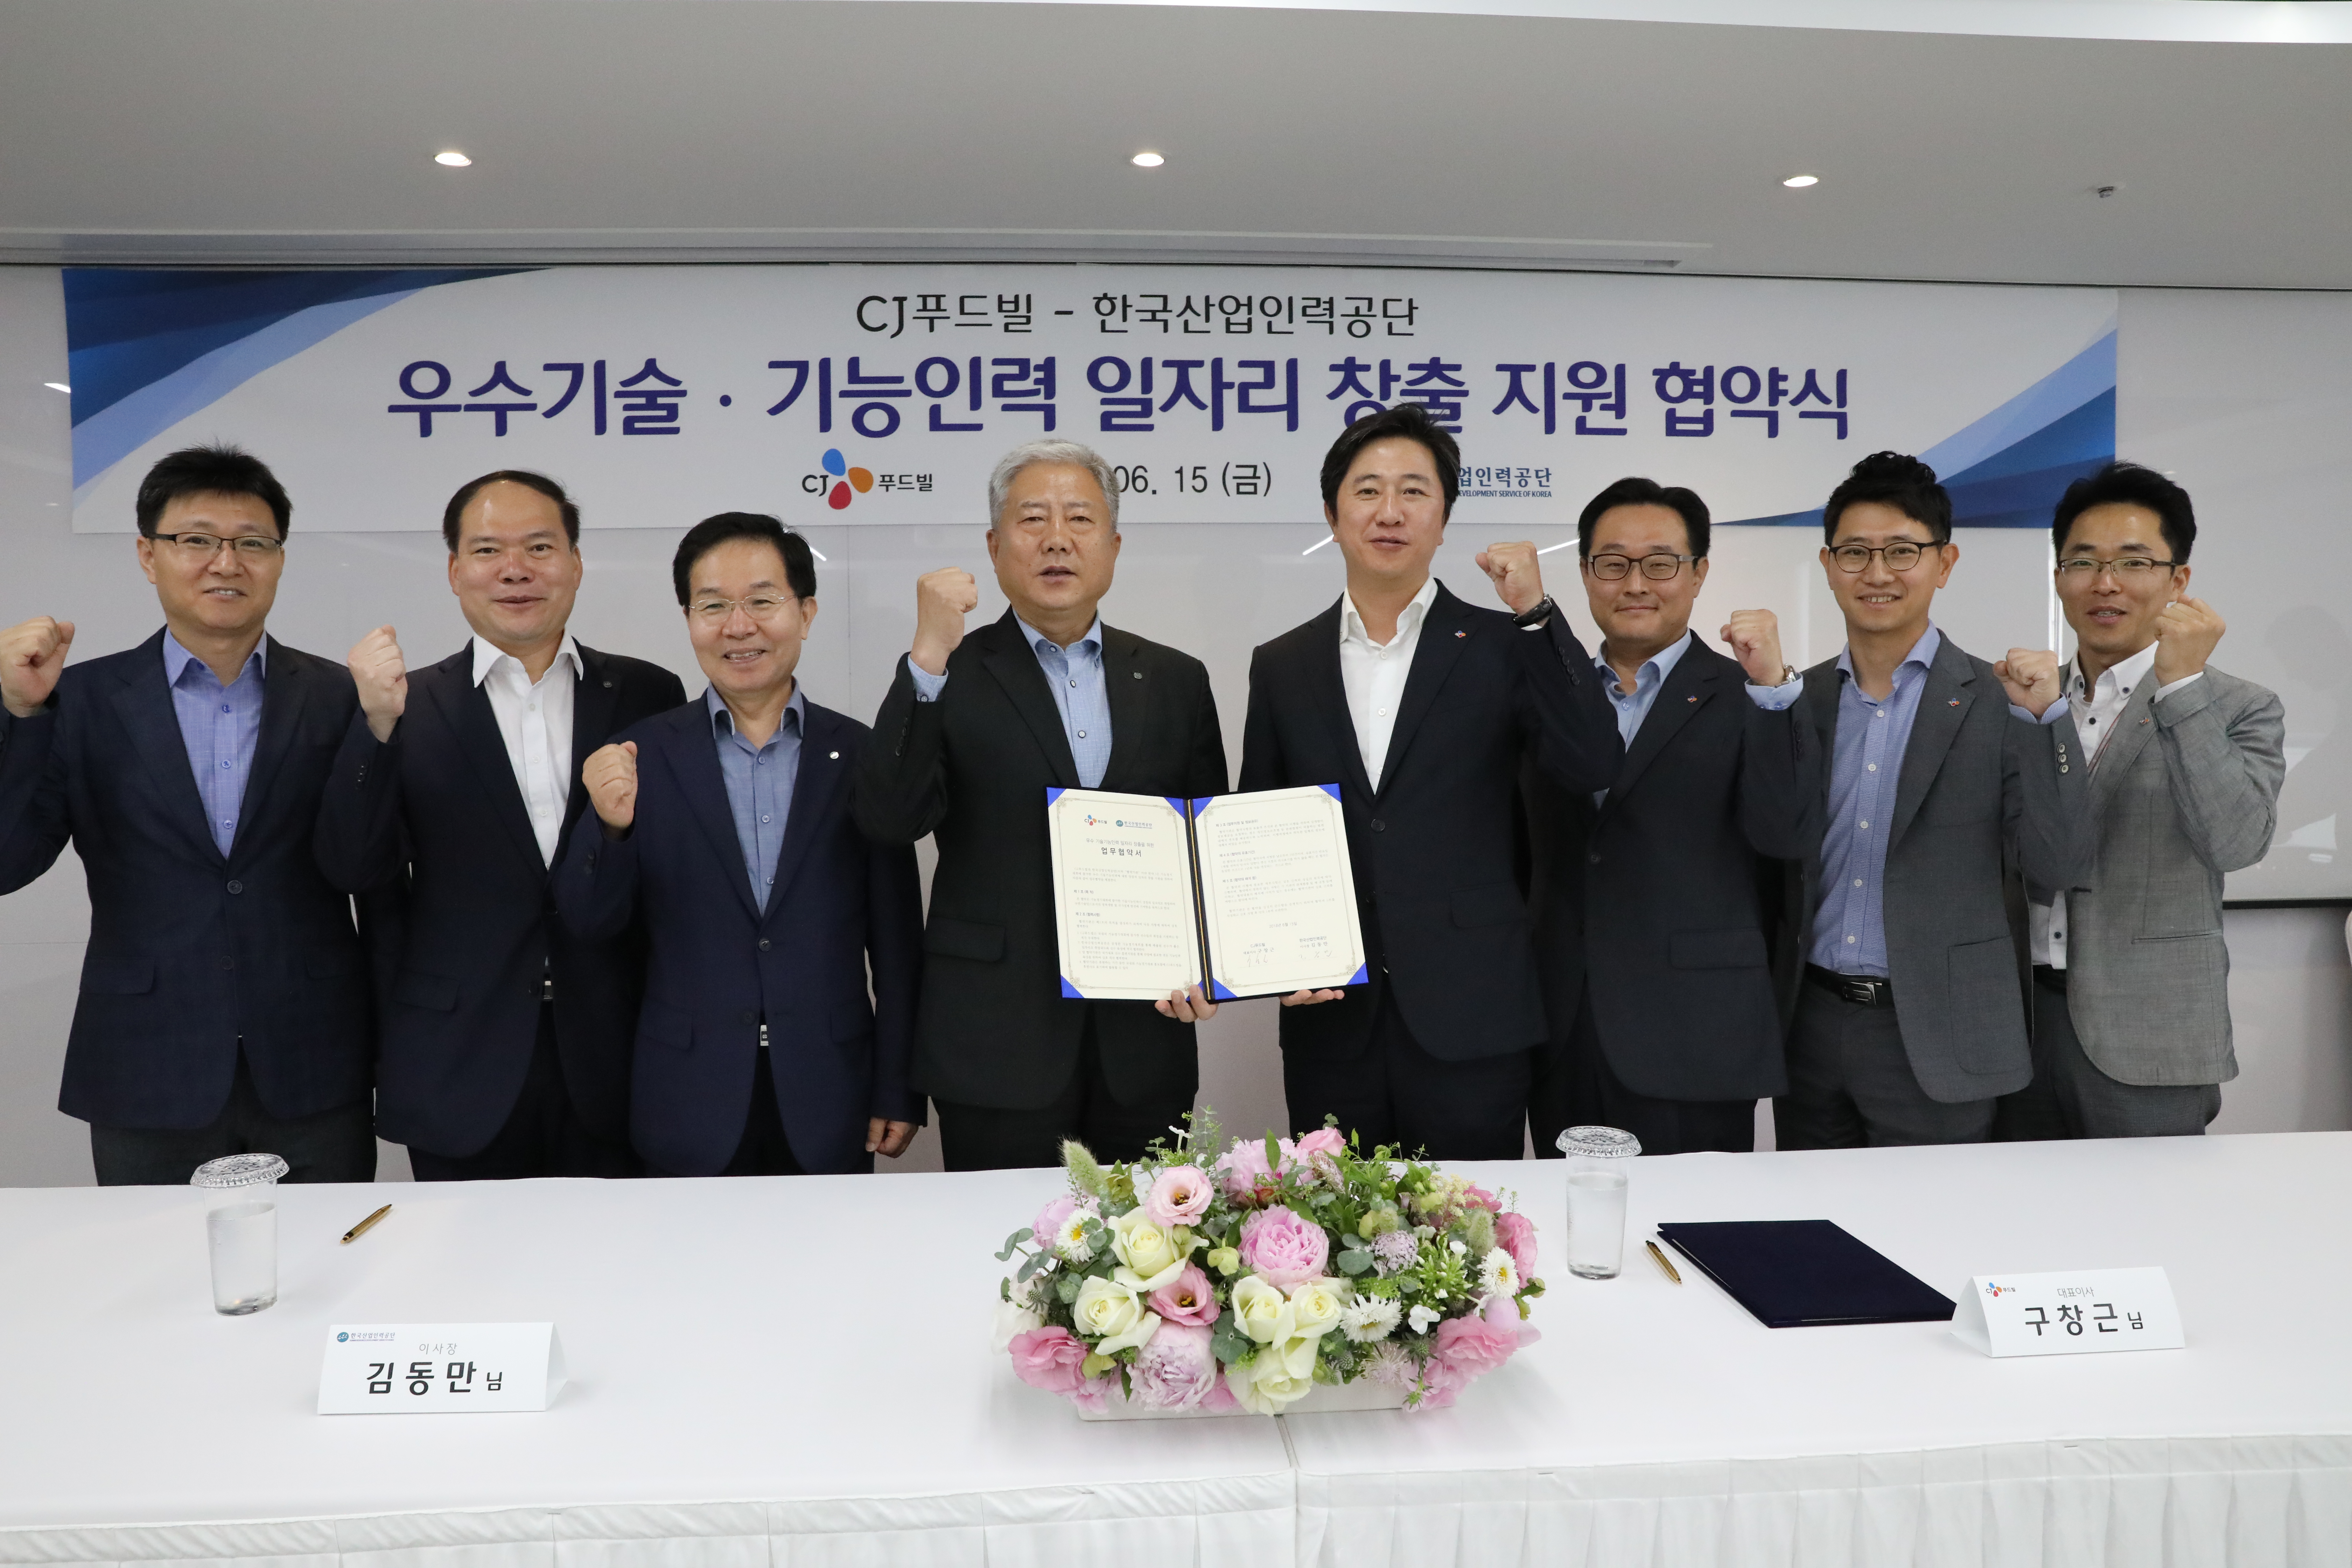 한국산업인력공단(이사장 김동만, 왼쪽 네번째)과 CJ푸드빌(대표이사 구창근, 오른쪽 네번째)은 15일, CJ푸드빌 본사(서울 중구)에서 기능경기대회 선수들의 취업지원과 우수기능인력 육성을 위한 업무협약을 체결했다.한국산업인력공단 제공 